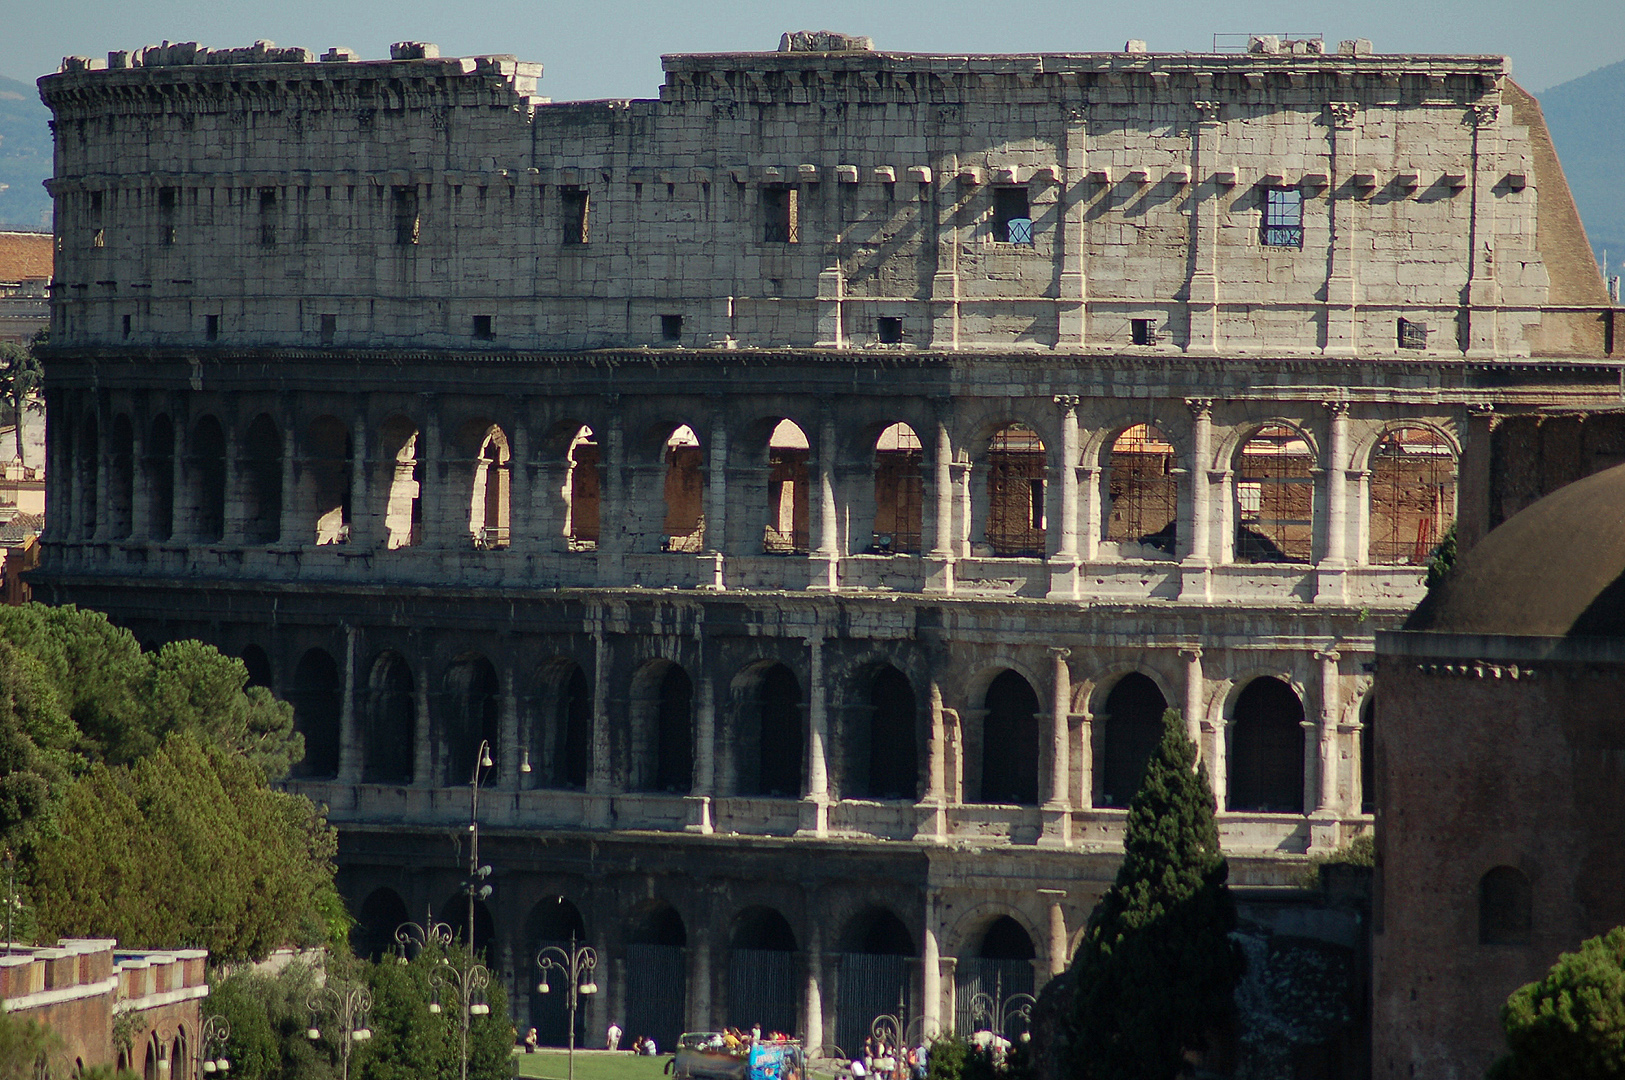 Colosseum (Rome, Italië); Colosseum (Italy, Latium, Rome)